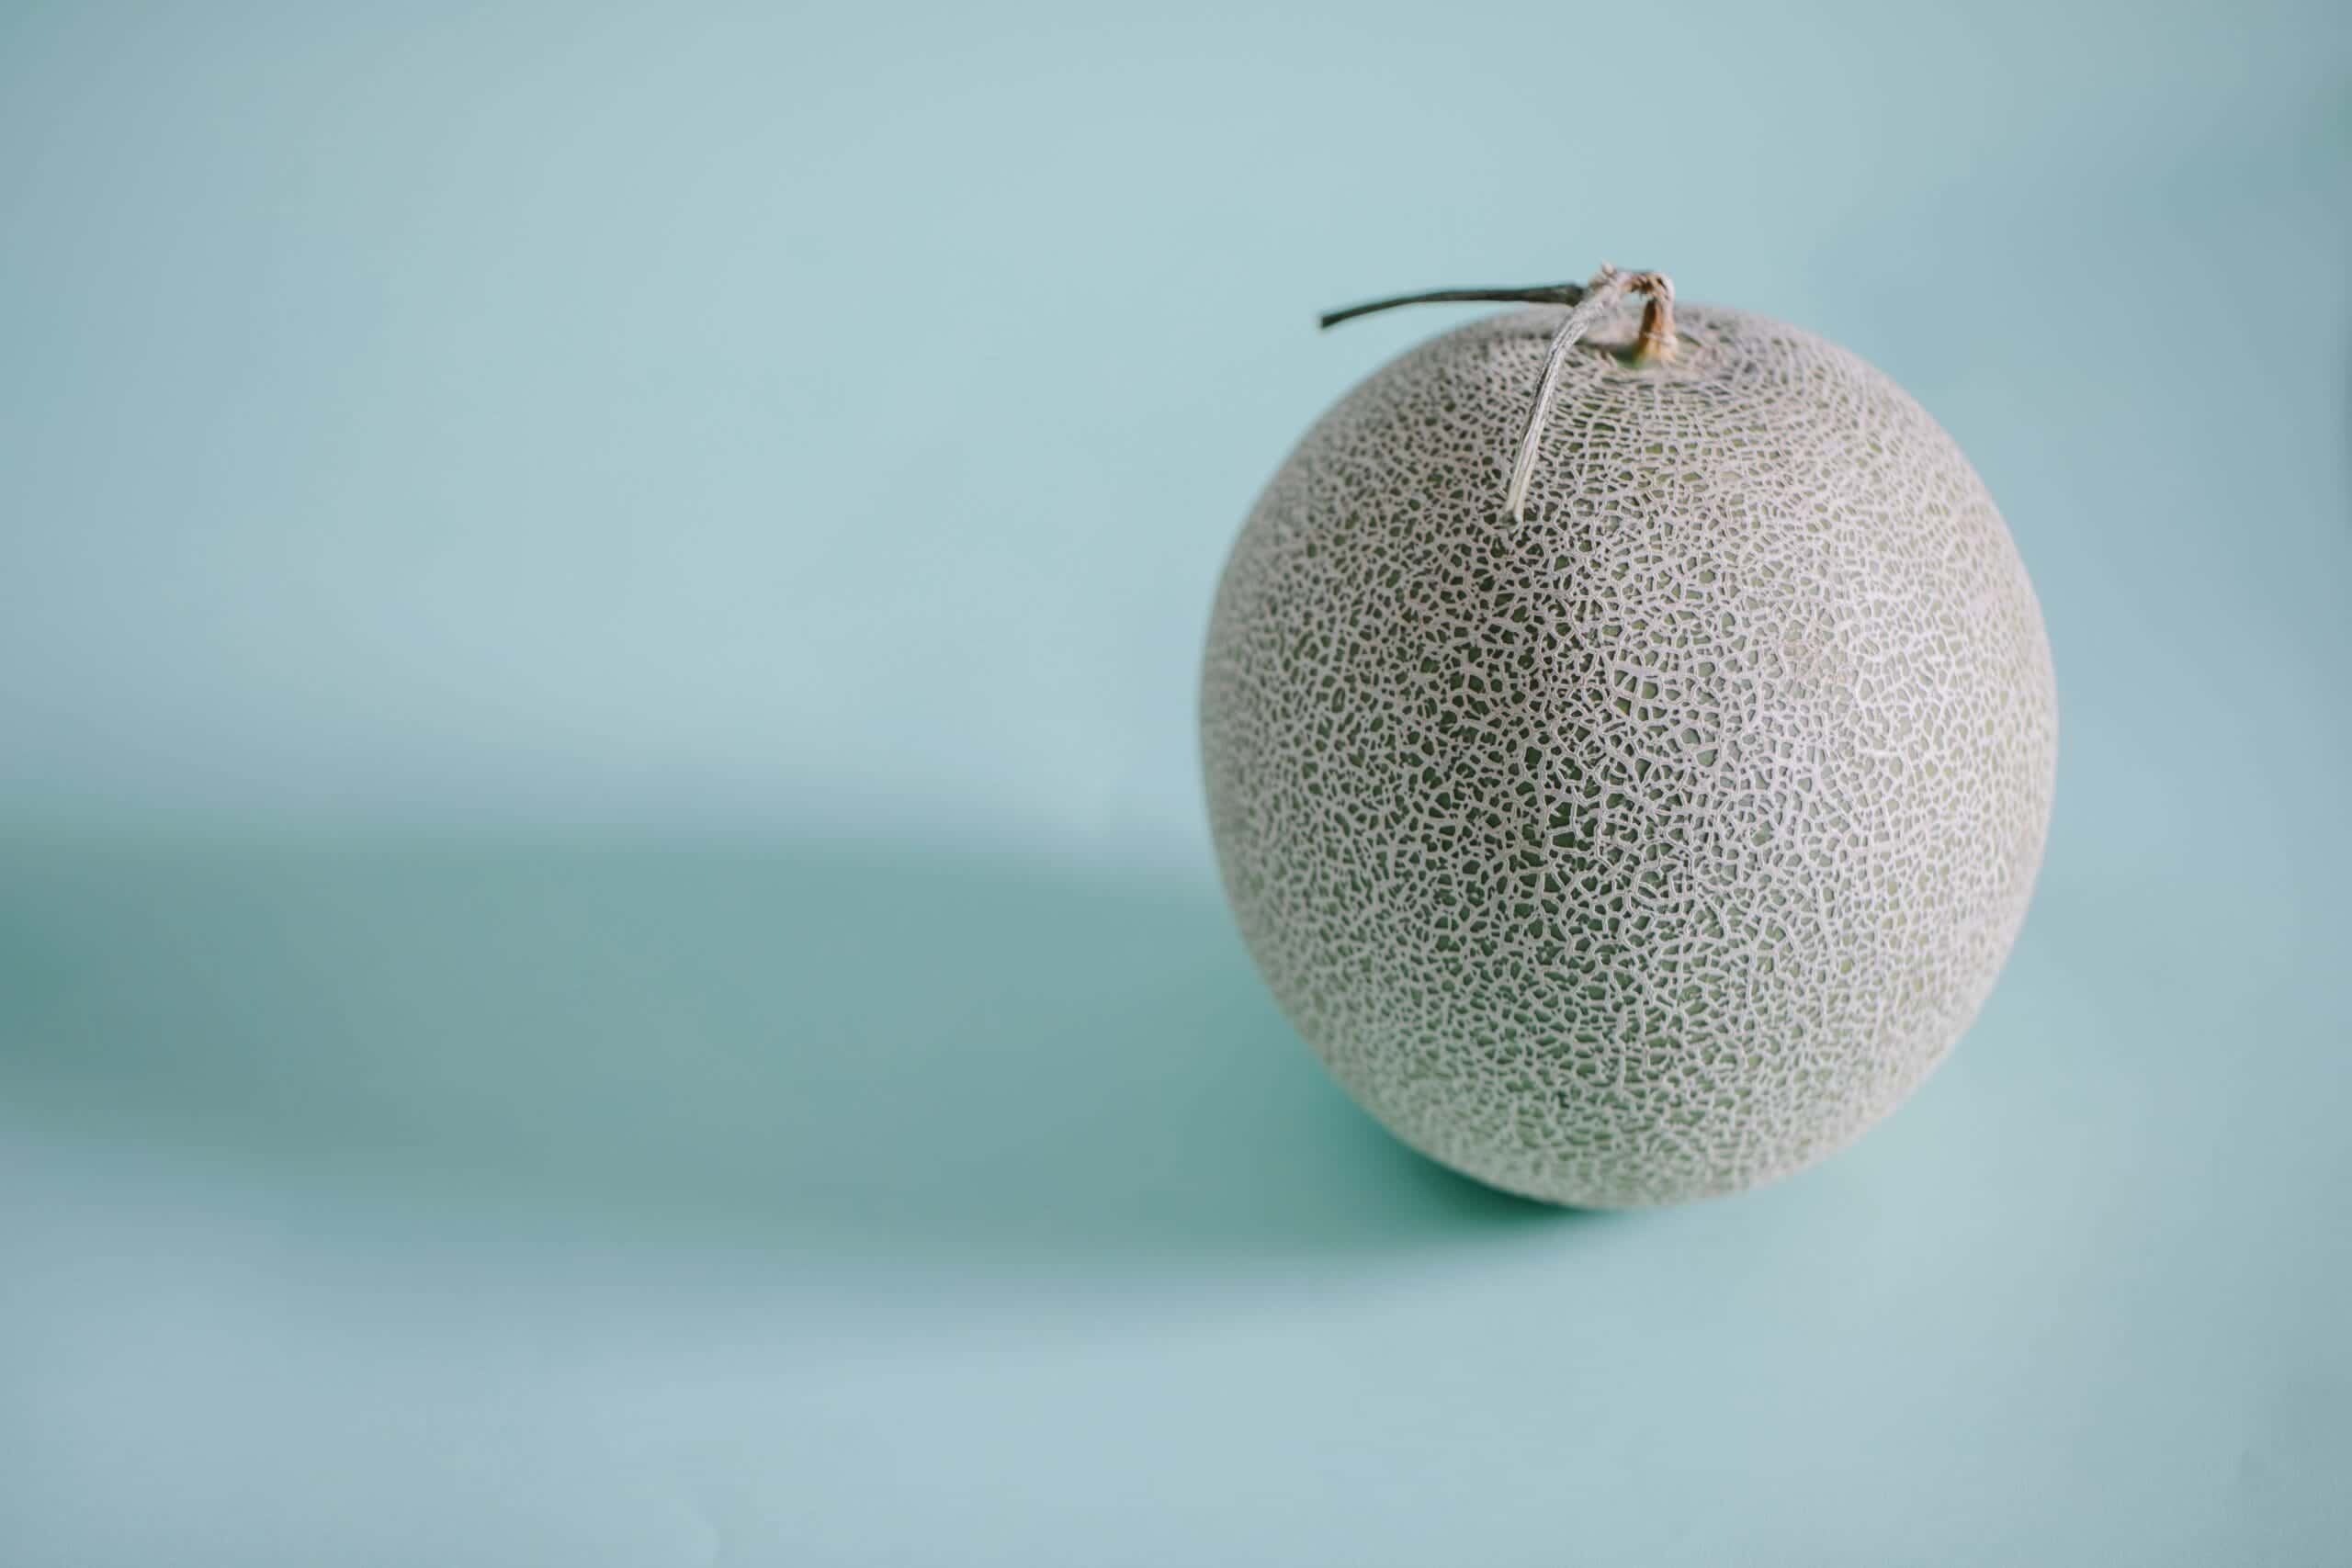 Melones ticos fueron rechazados en Alemania por alto contenido del fungicida clorotalonil